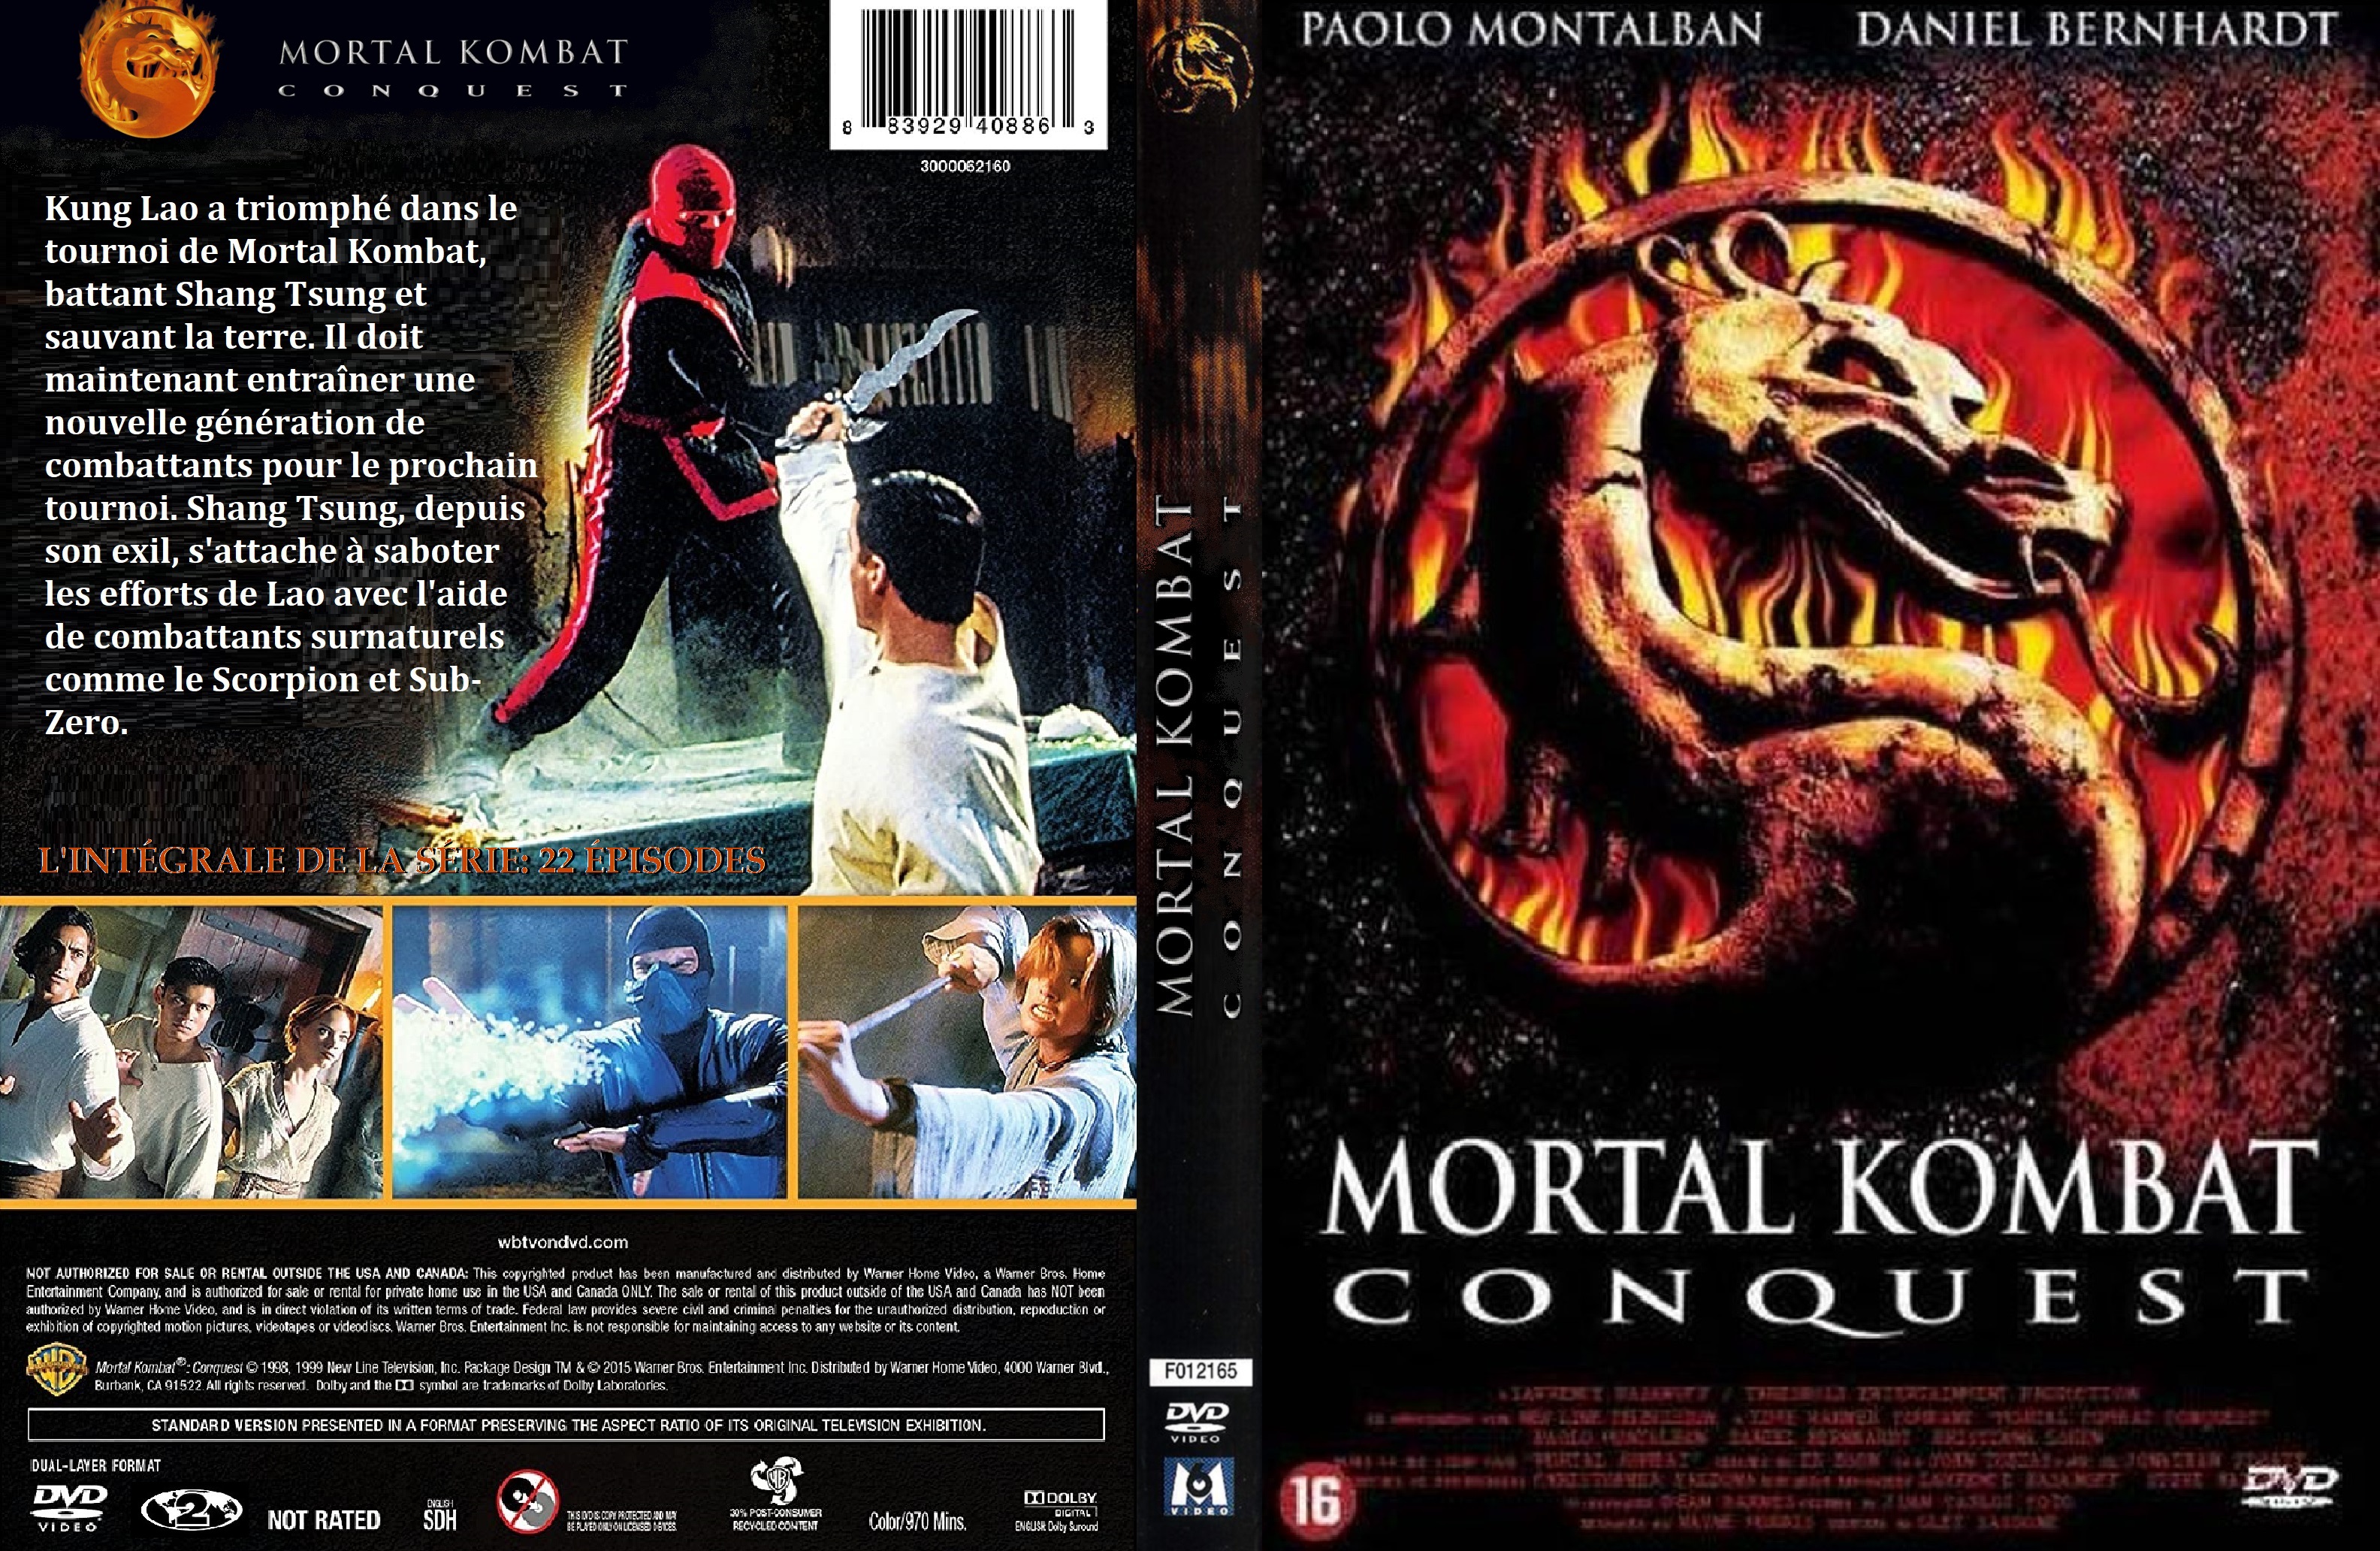 Jaquette DVD Mortal Kombat Conquest custom